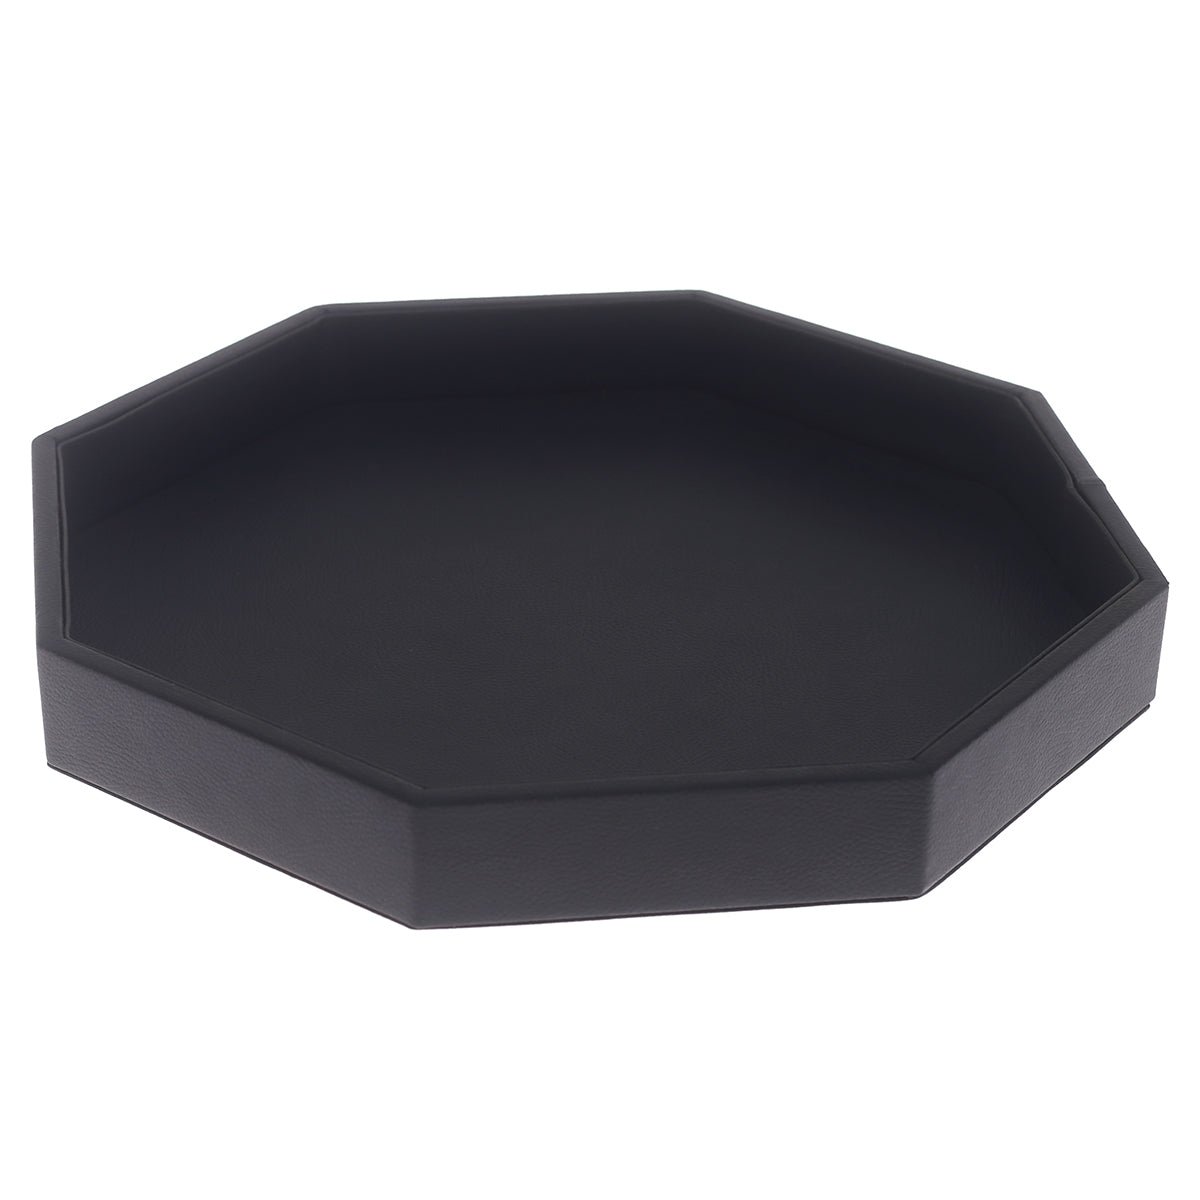 Octagon Platter Tray Black